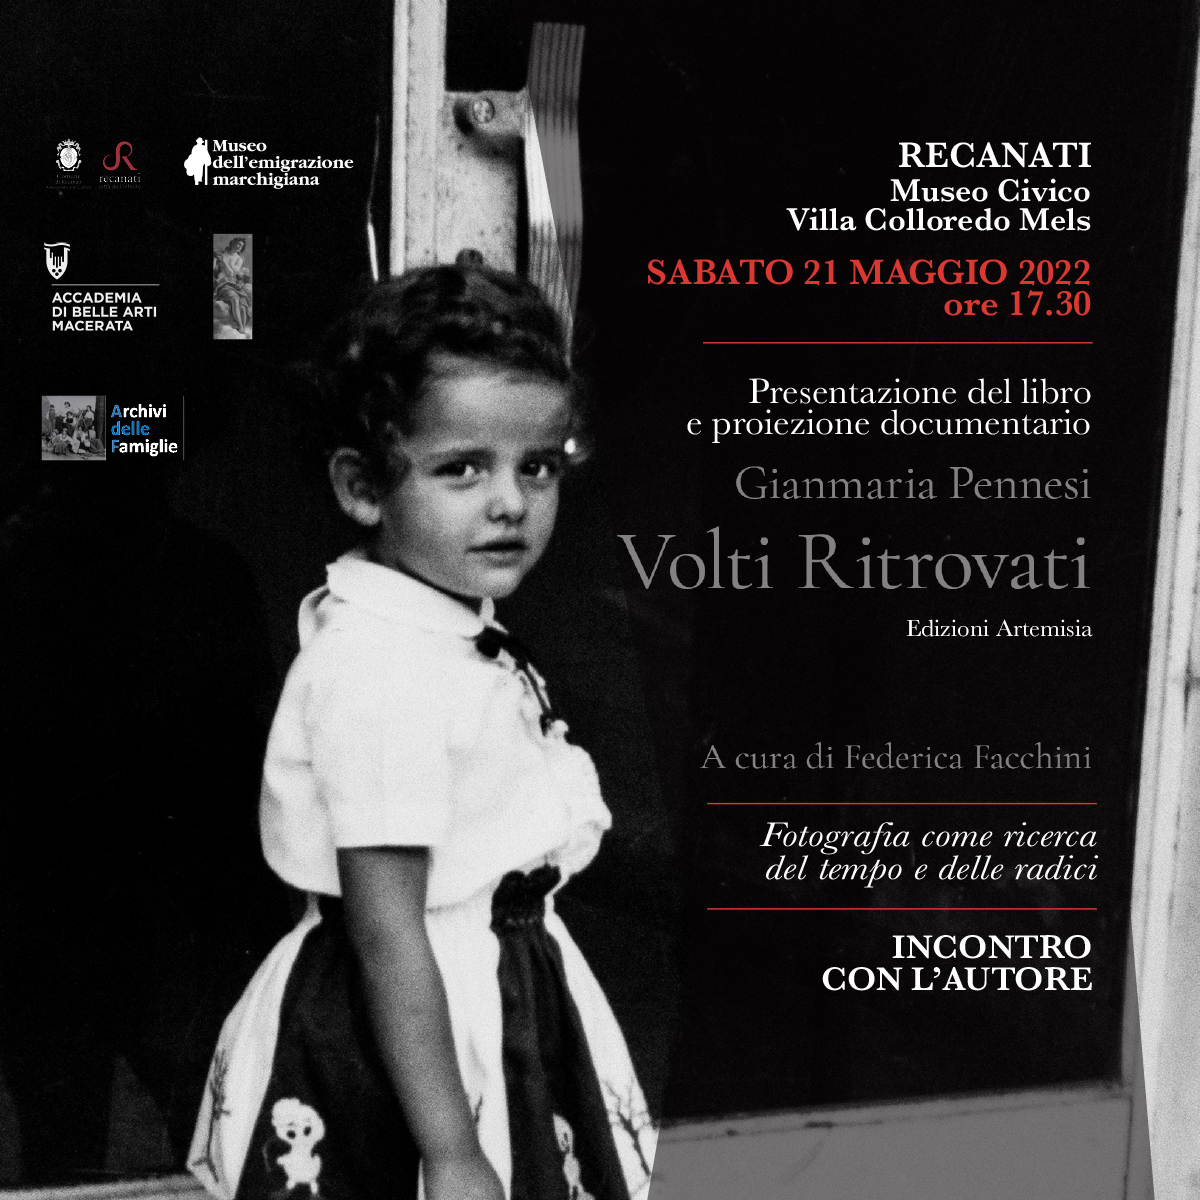 Presentazione del libro/documentario “Volti Ritrovati” di Gianmaria Pennesi